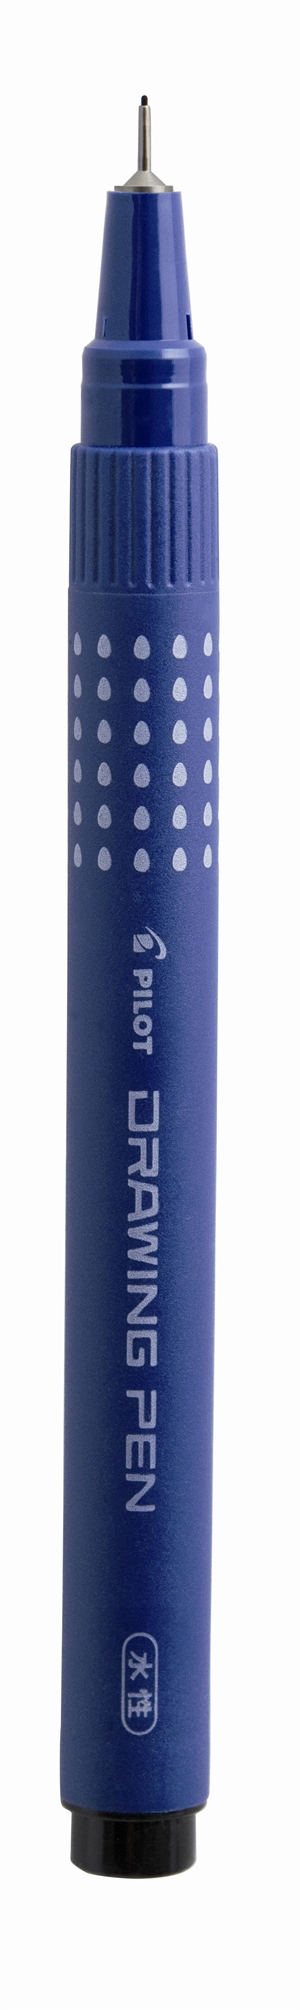 Pilot Filtpen m/hætte Drawing Pen 0,1mm sort